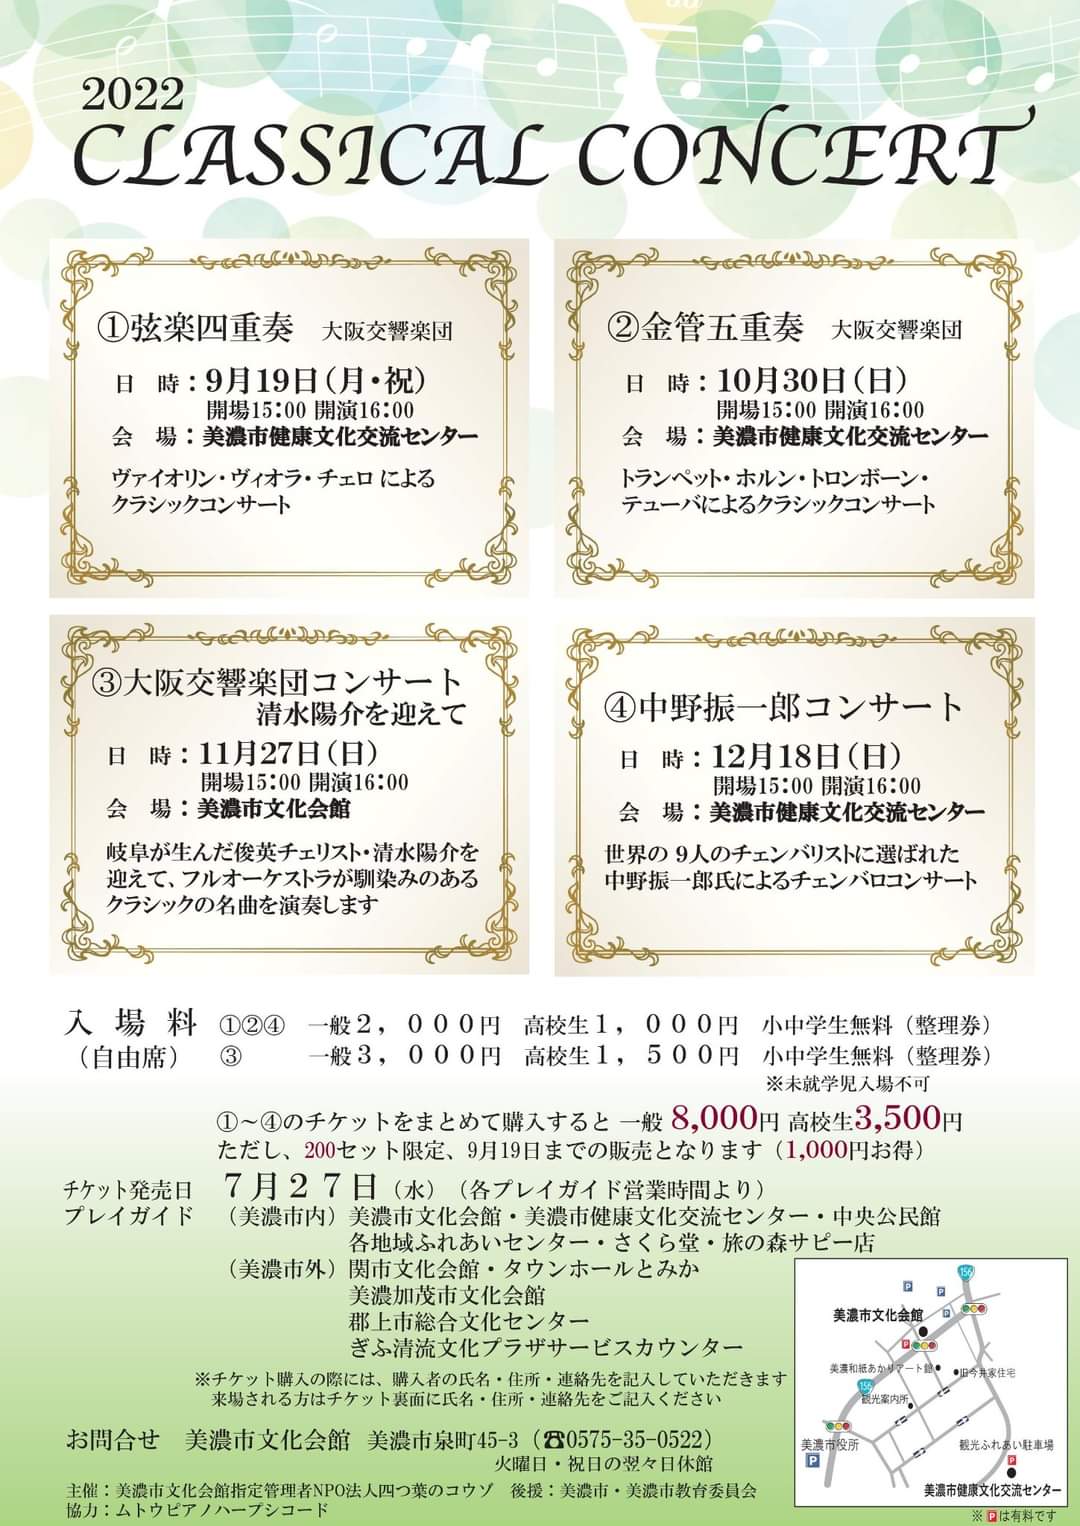 チケット発売中 毎月開催 和紙とうだつの上がる町 岐阜県美濃市で本格的クラシックコンサートを開催 エンタメnow